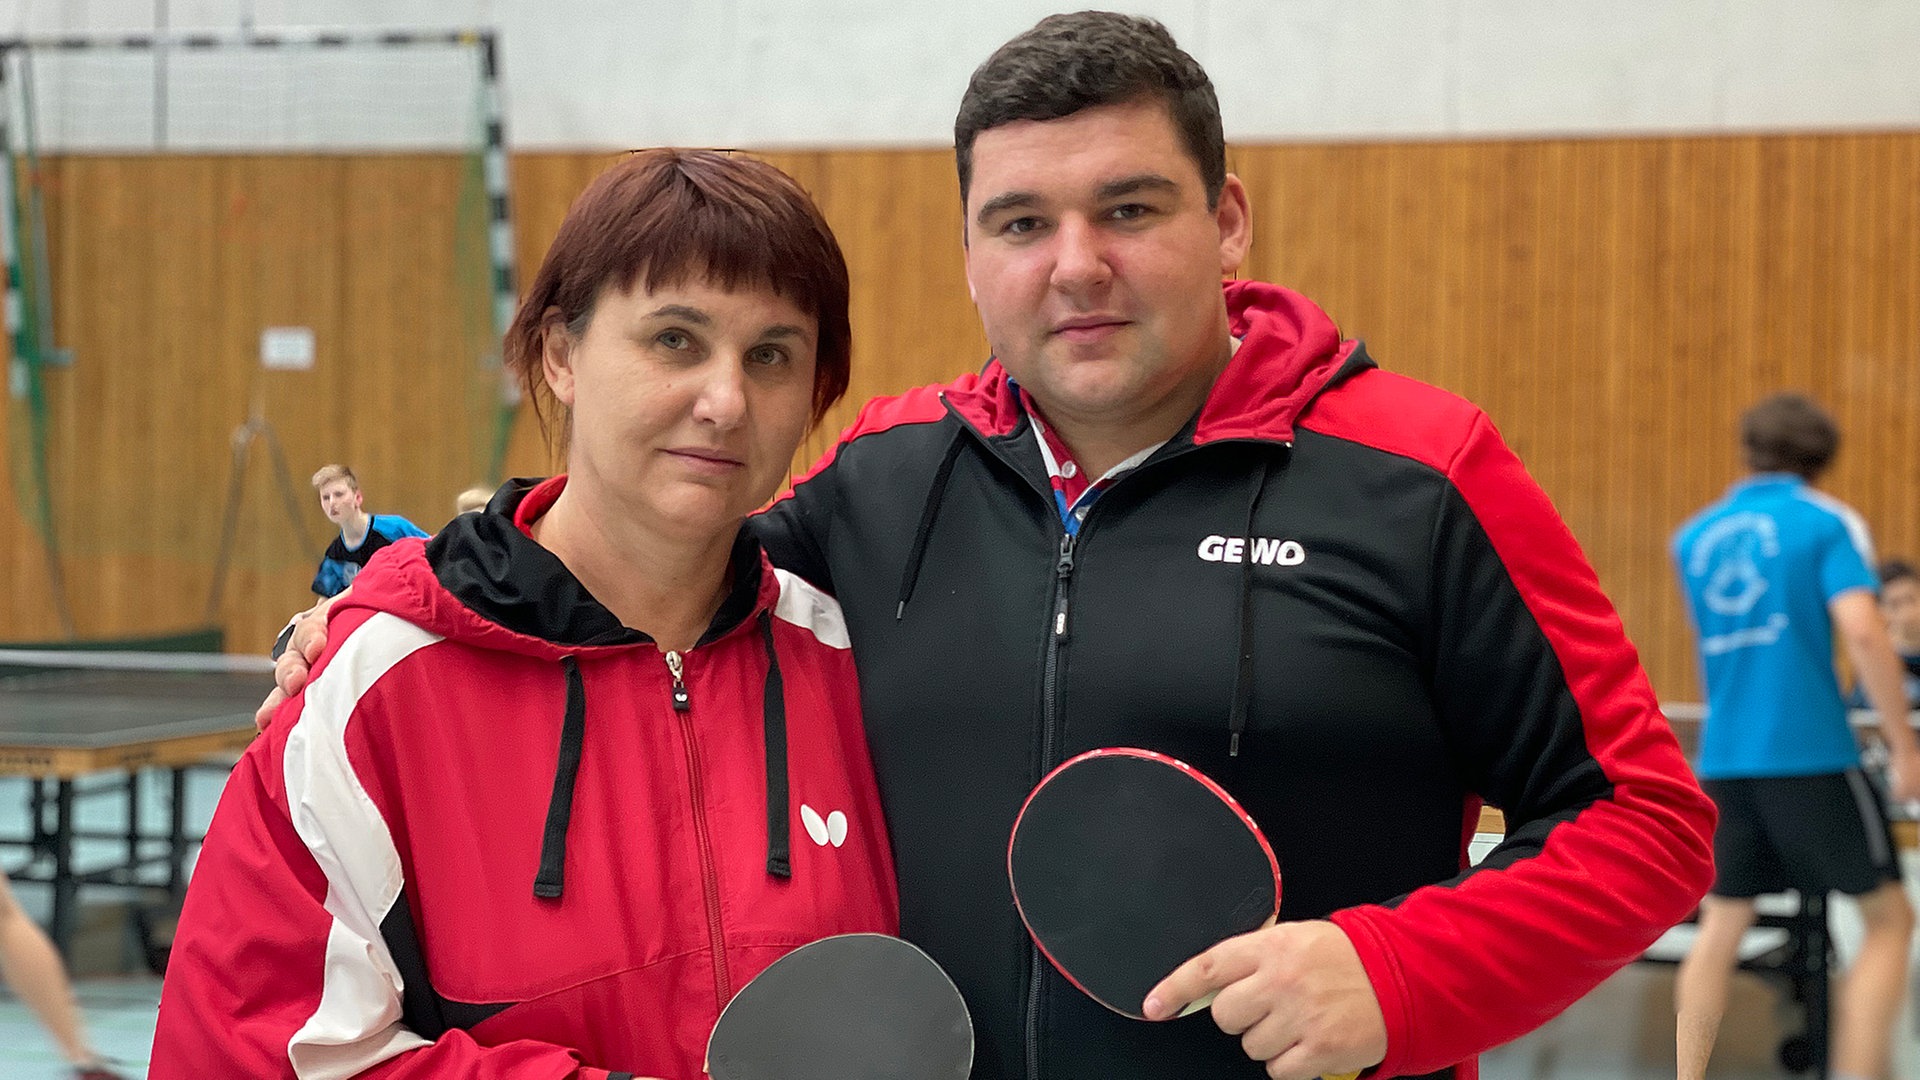 Sport verbindet Wie eine ukrainische Familie schnell Anschluss findet NDR.de - Nachrichten